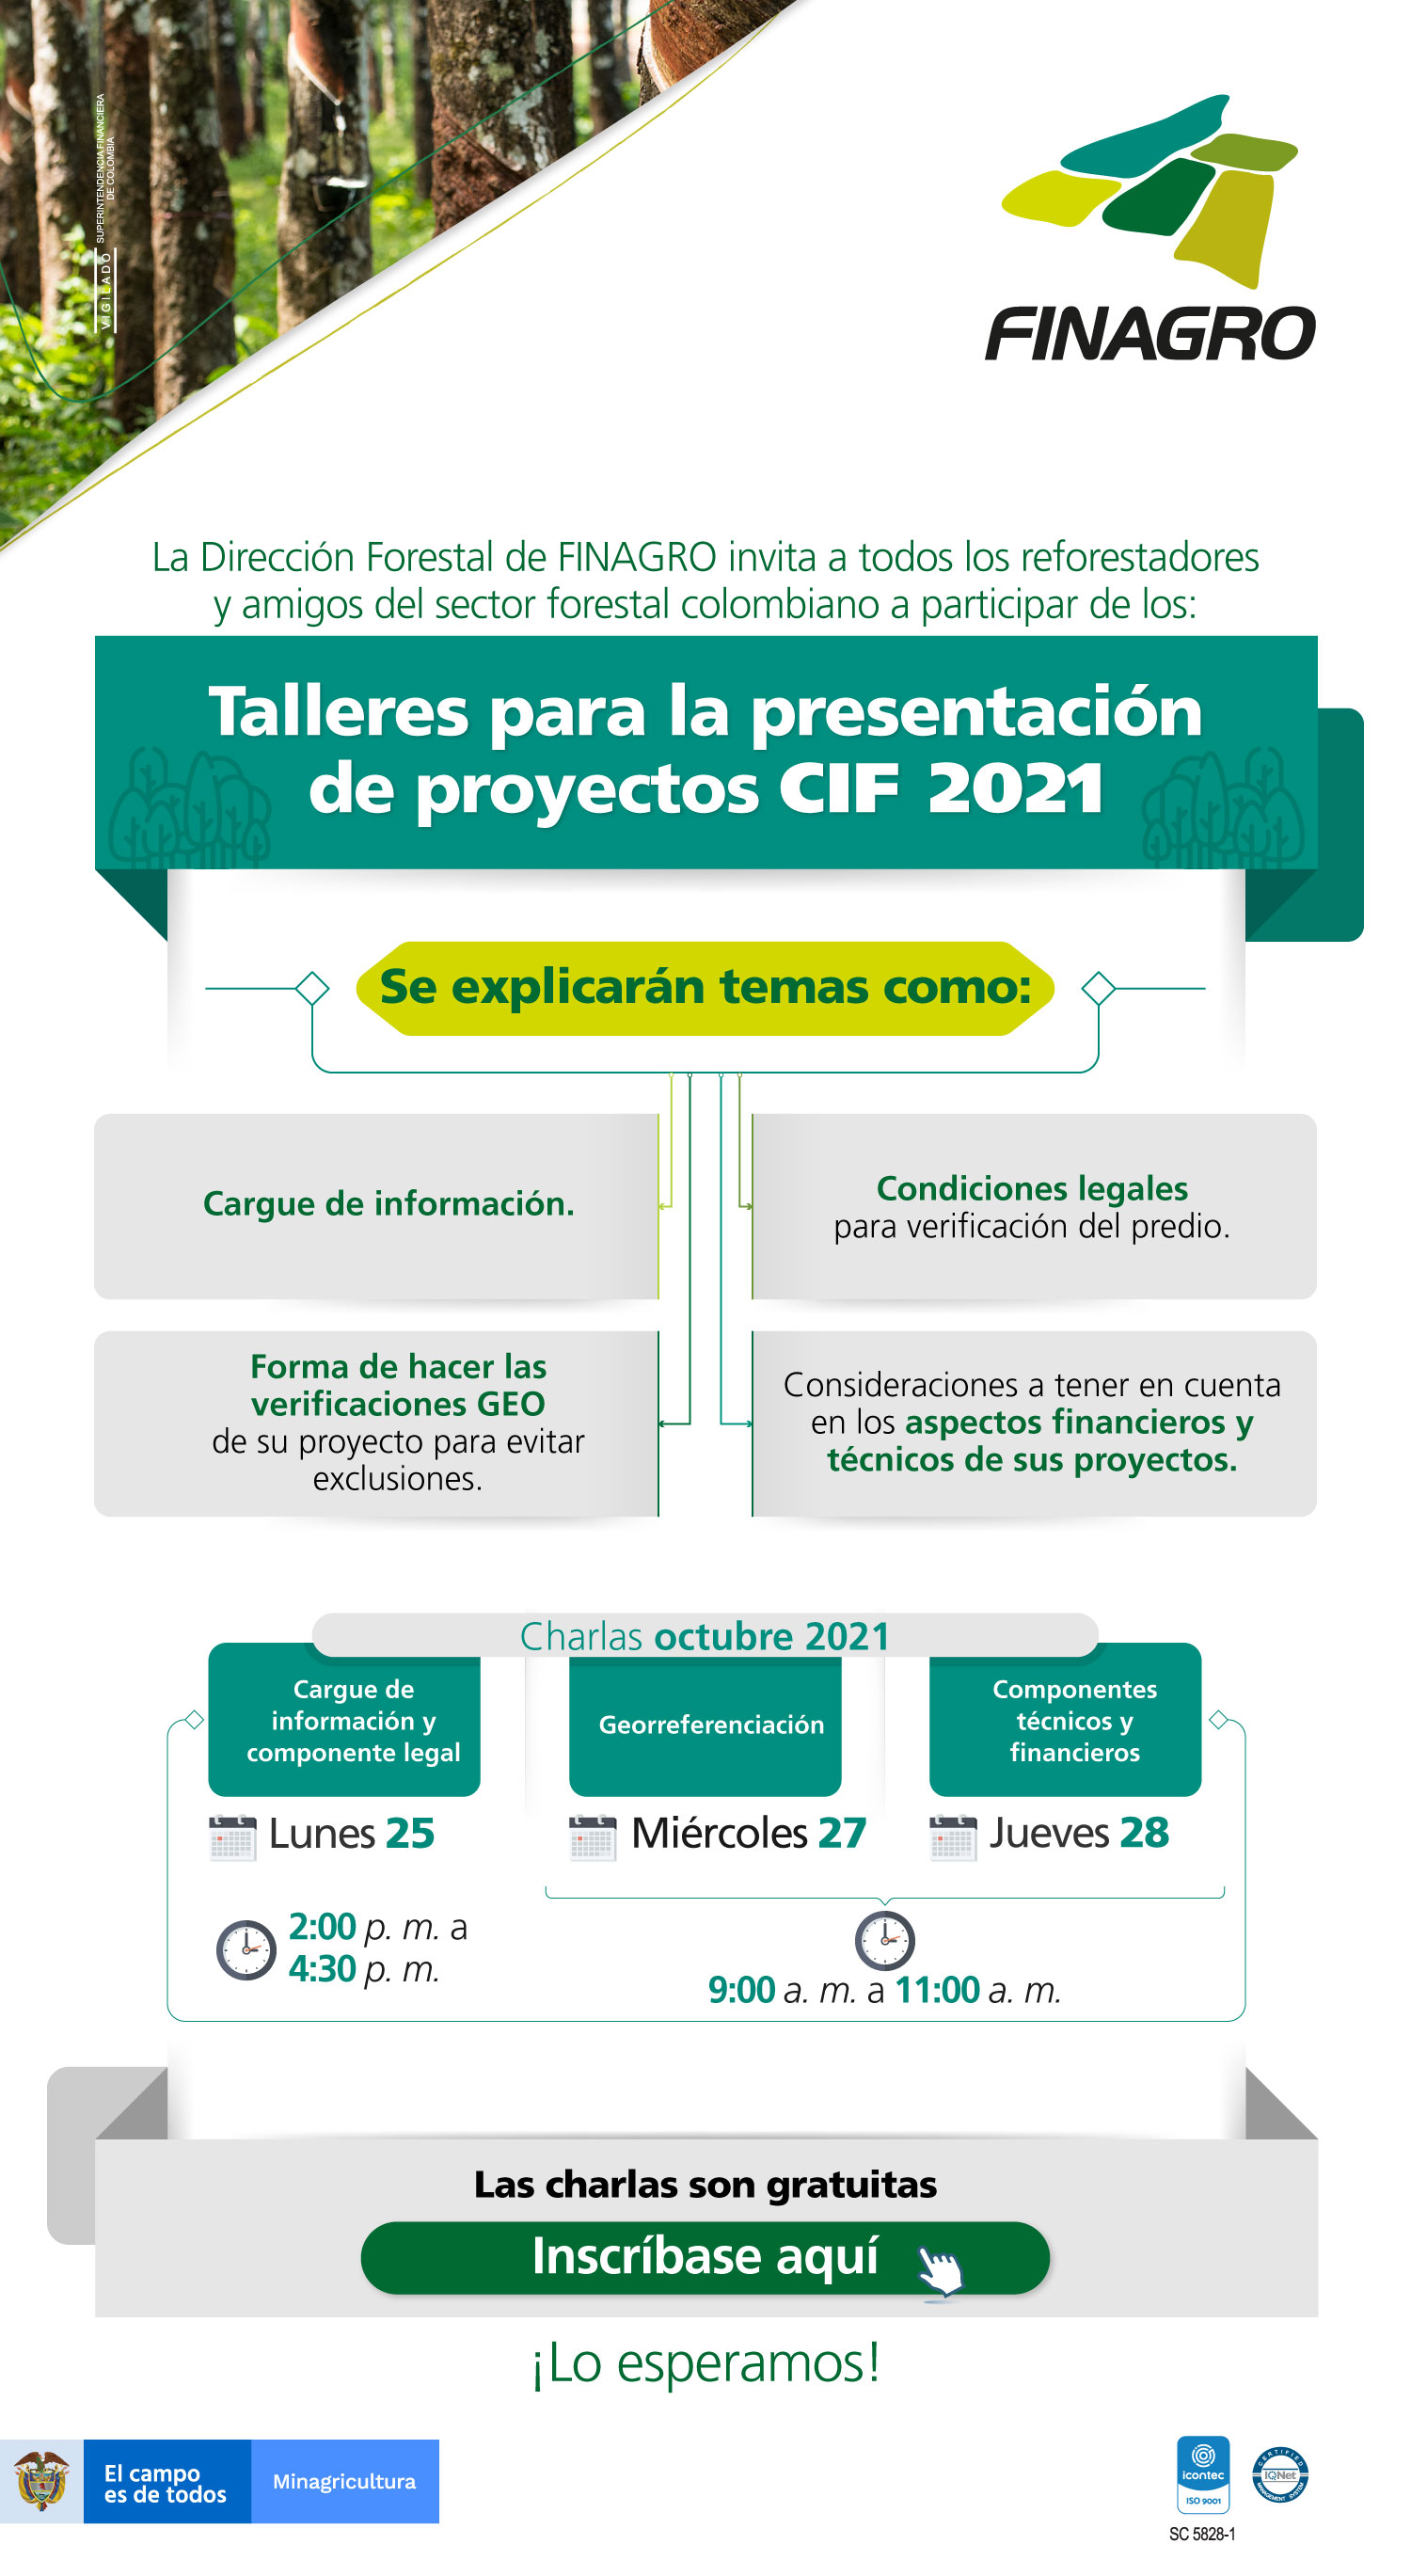 Talleres para la presentación de proyectos CIF 2021